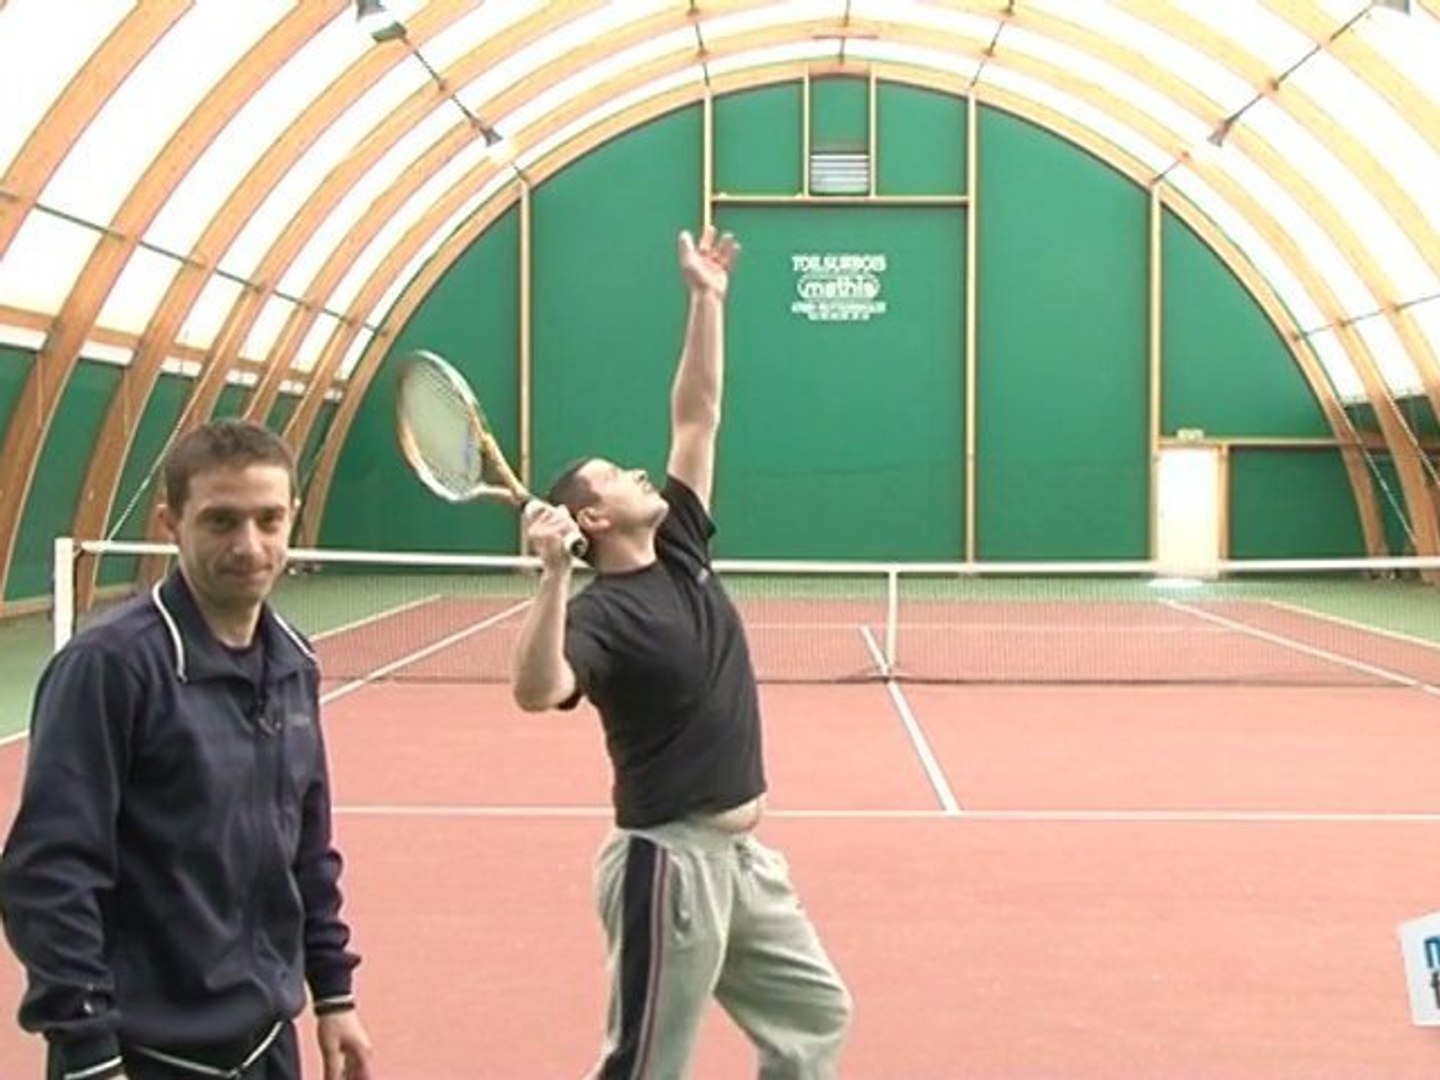 Cours Tennis: faire un service lifté - Vidéo Dailymotion